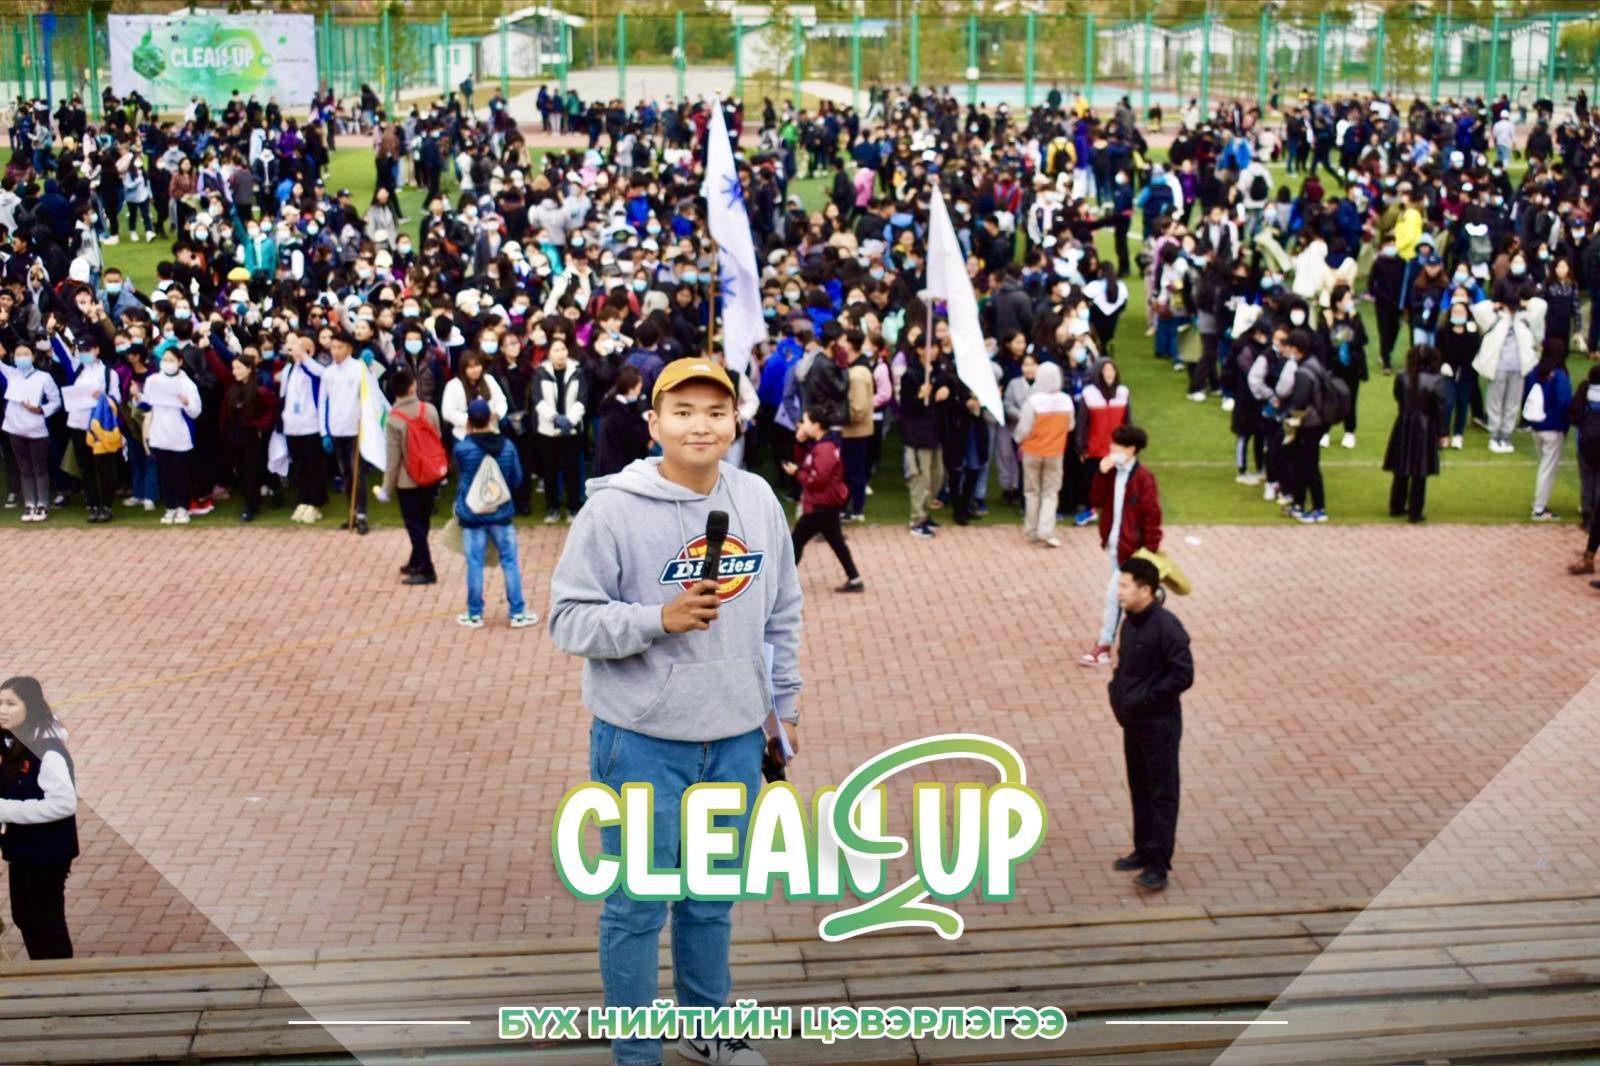 Н.Булгантамир: Cleanup, Bubble festival зэрэг төслүүд улаанбаатар хотыг цэвэрхэн байлгах зорилготой